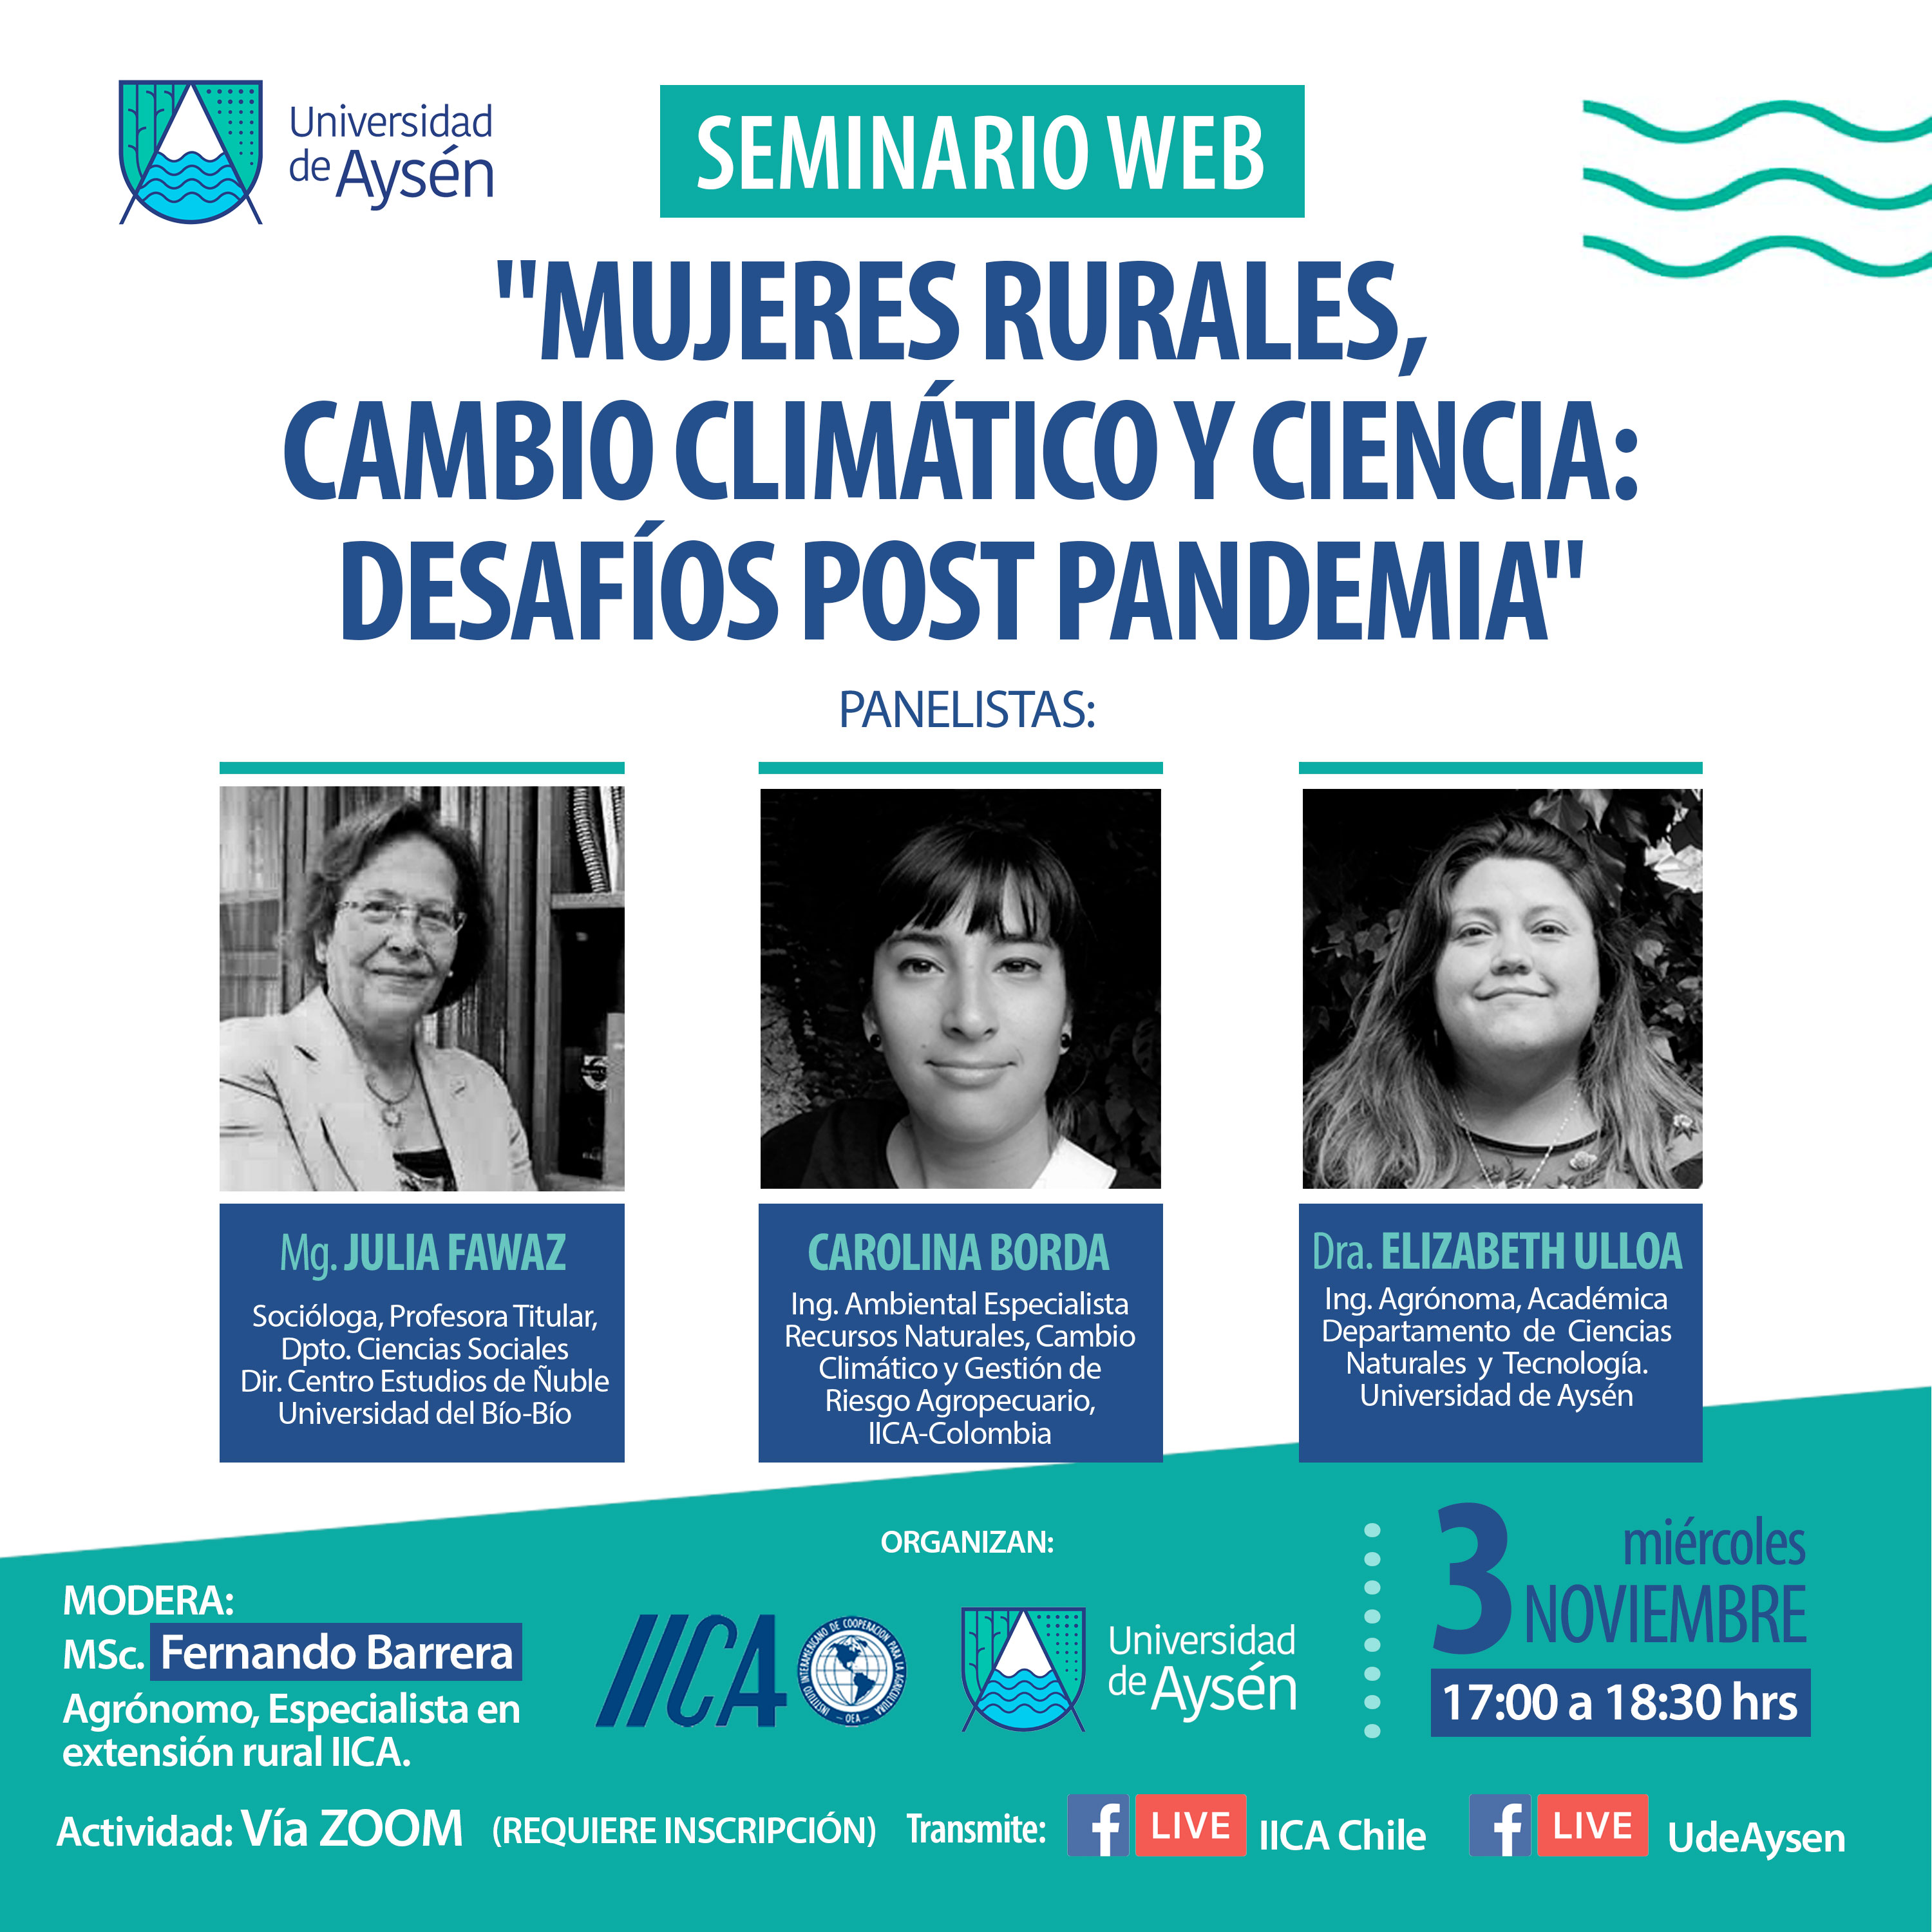 Seminario "Mujeres rurales, cambio climático y ciencia: desafíos post pandemia".